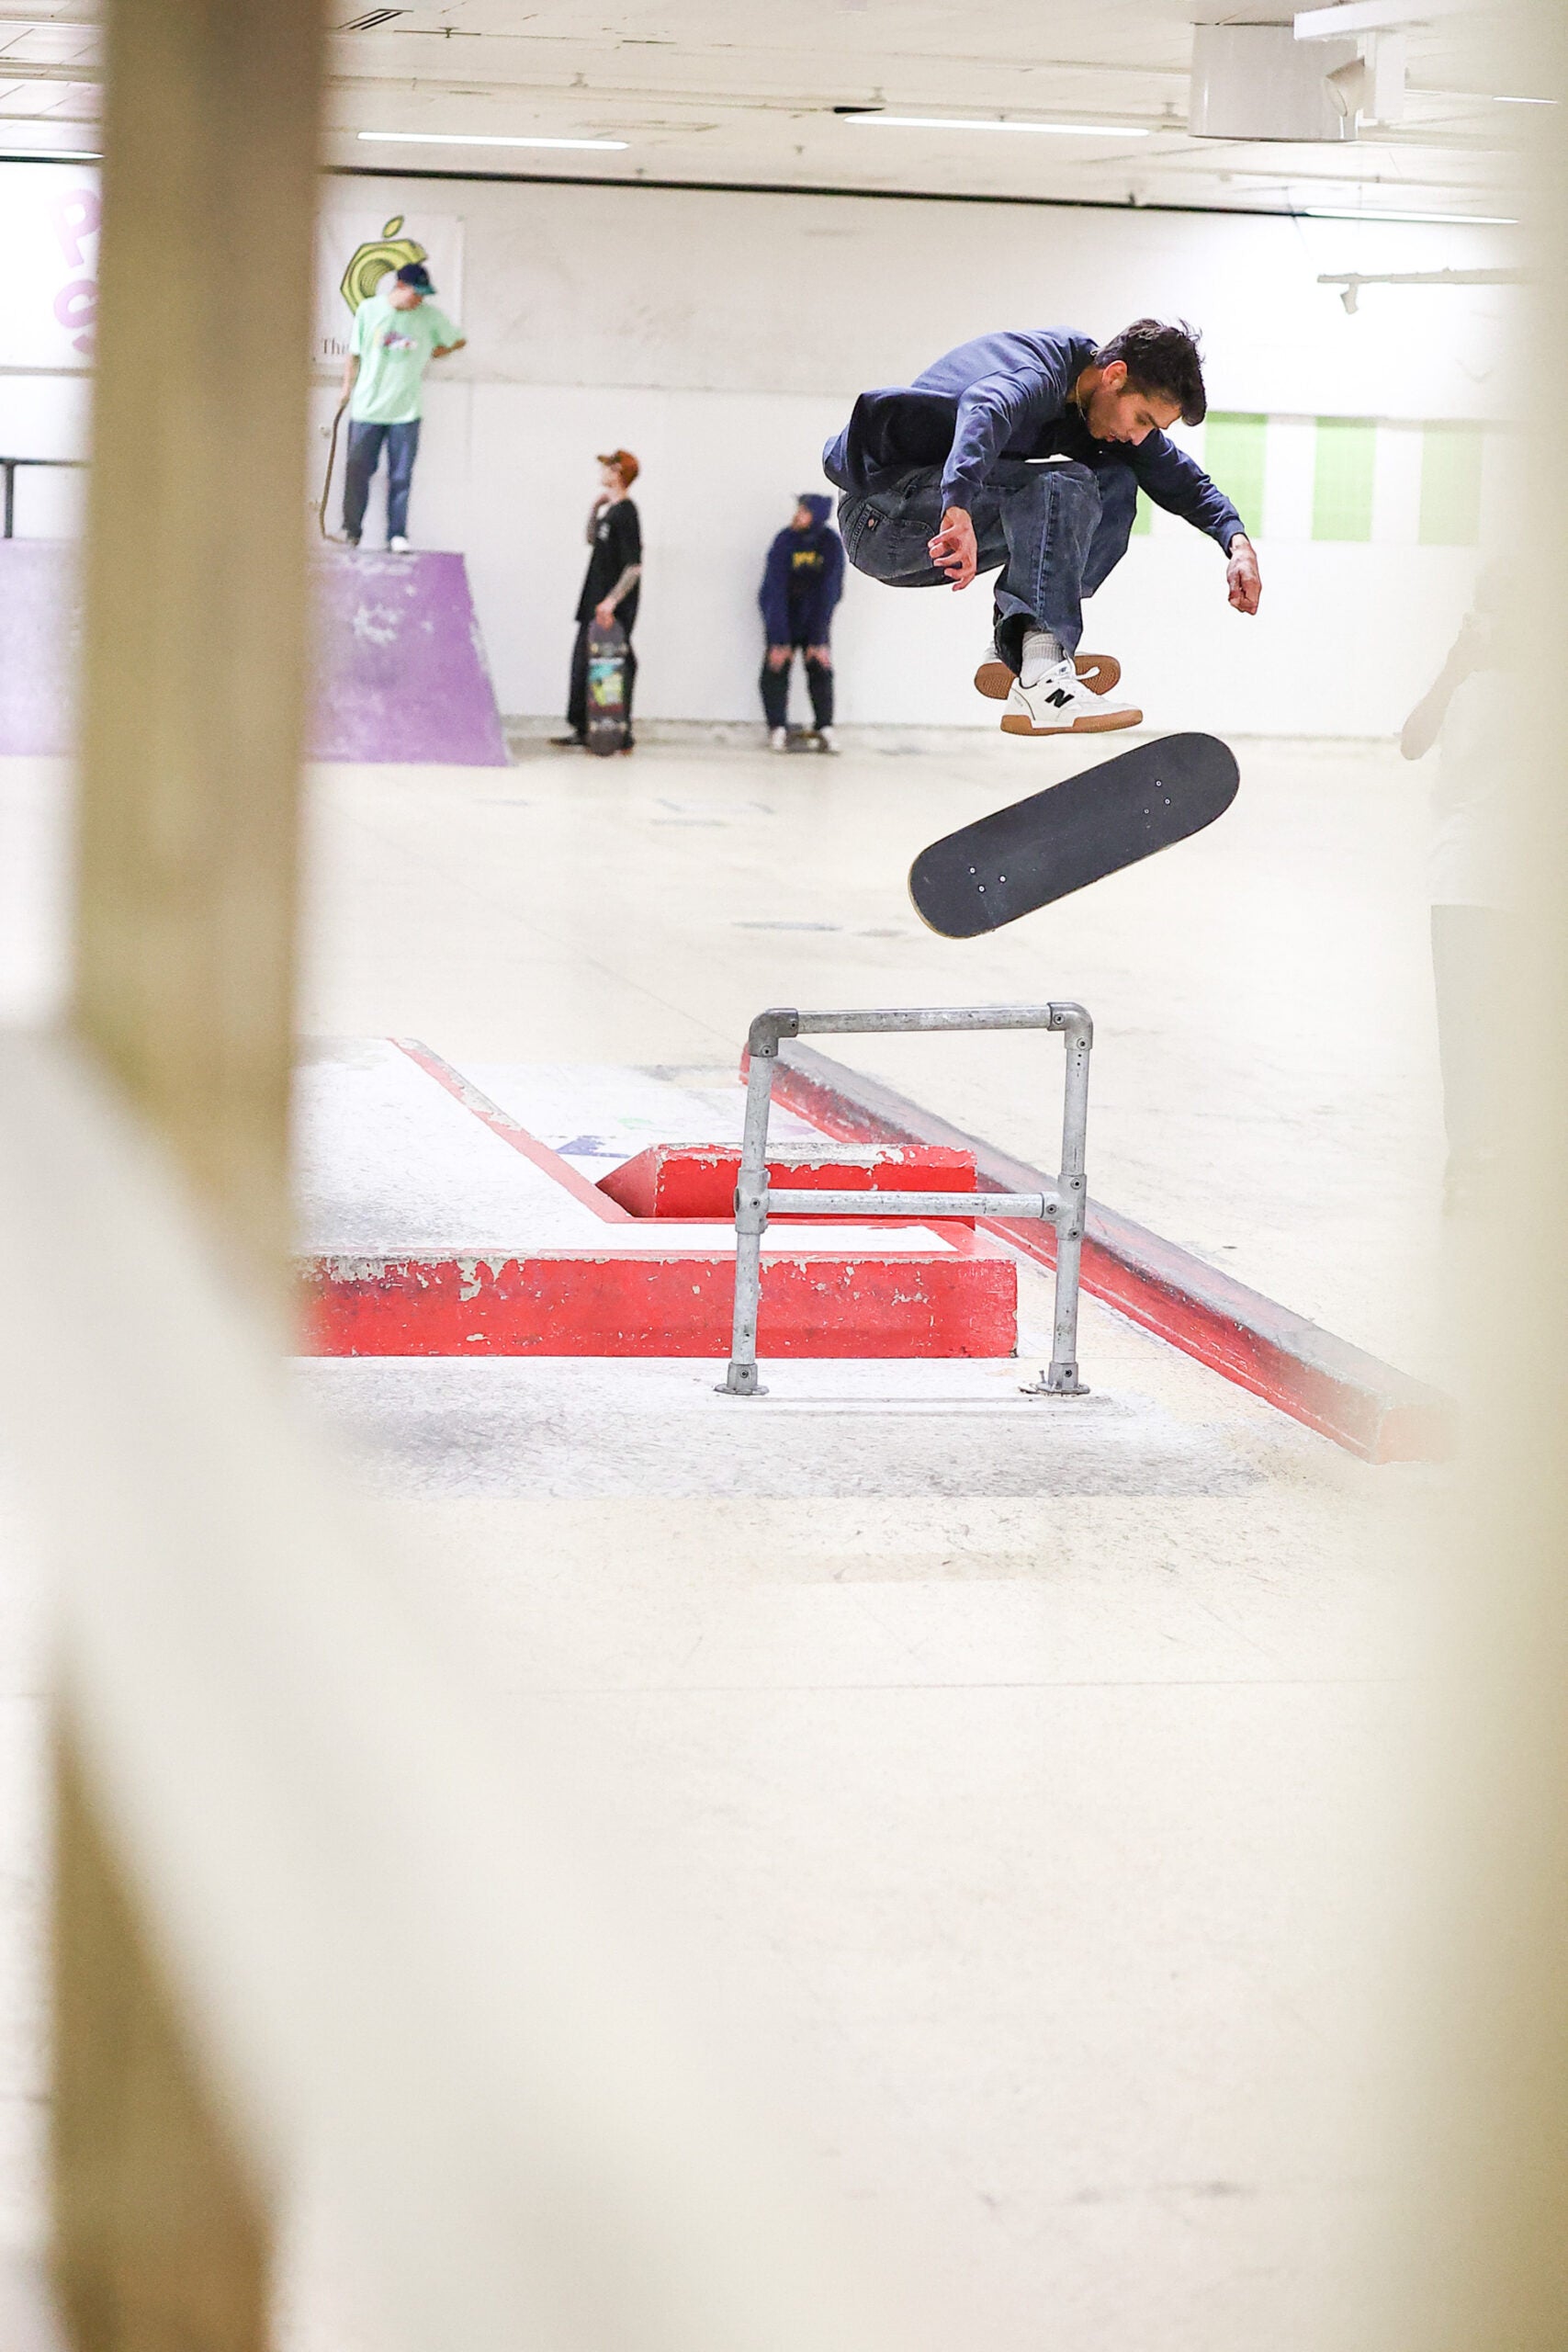 Tom Knox 360 Flip at Pitt Street Skatepark, photo by Davide Biondani - CSC, Cardiff Skateboard Club - UK Skate Shop